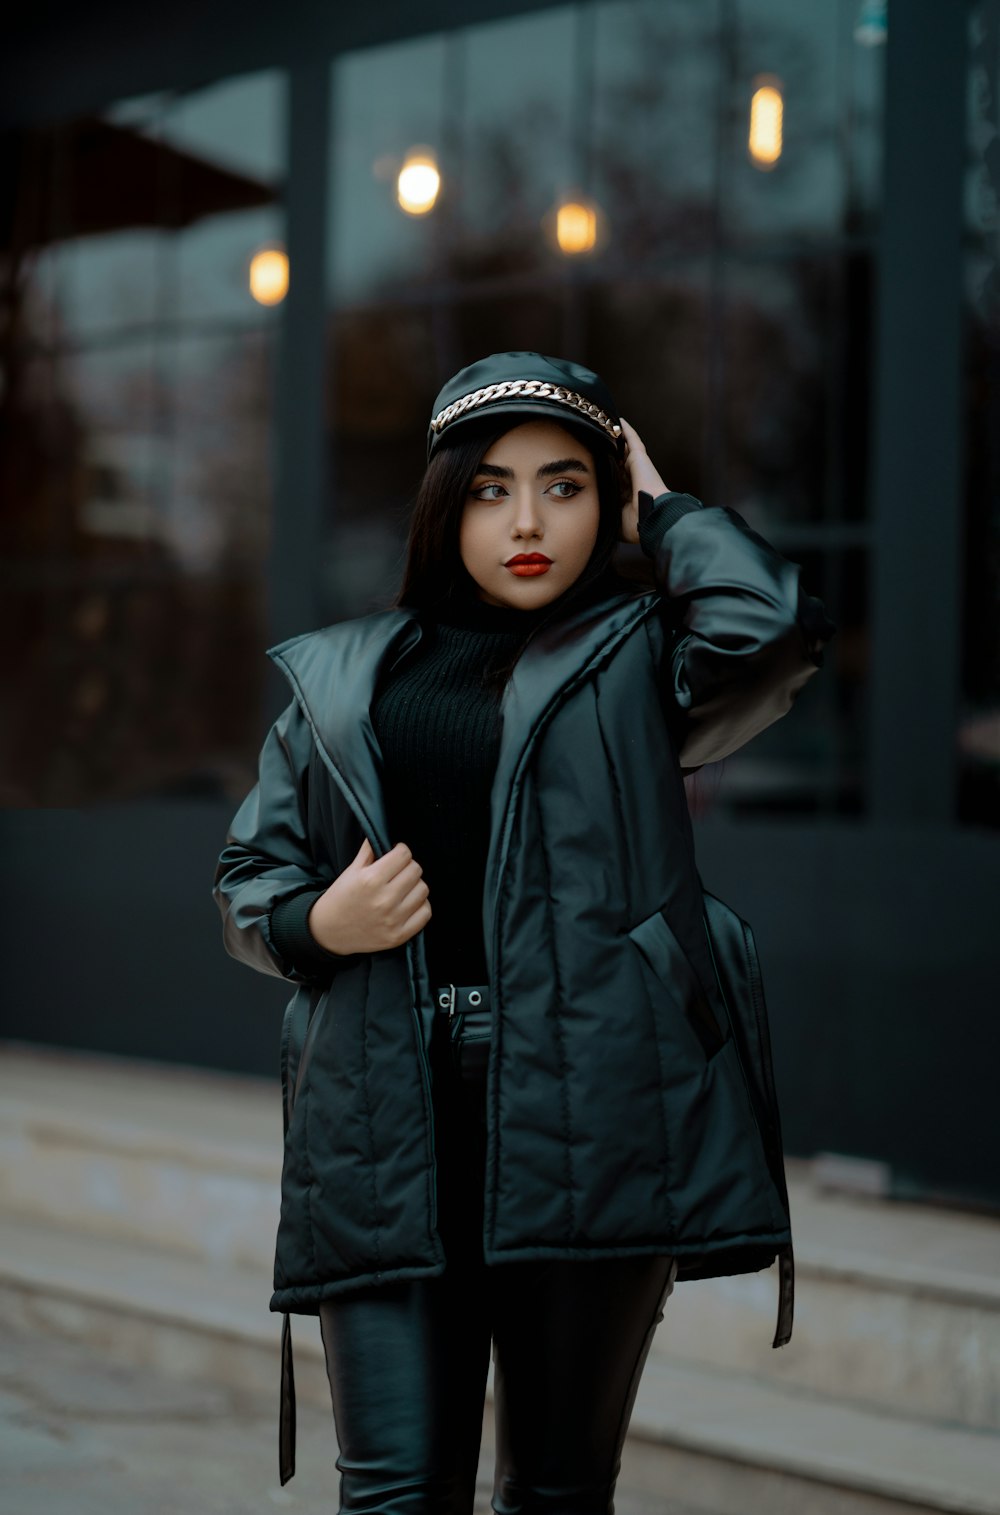 Foto Una mujer con una chaqueta negra y un sombrero – Imagen Retrato gratis  en Unsplash